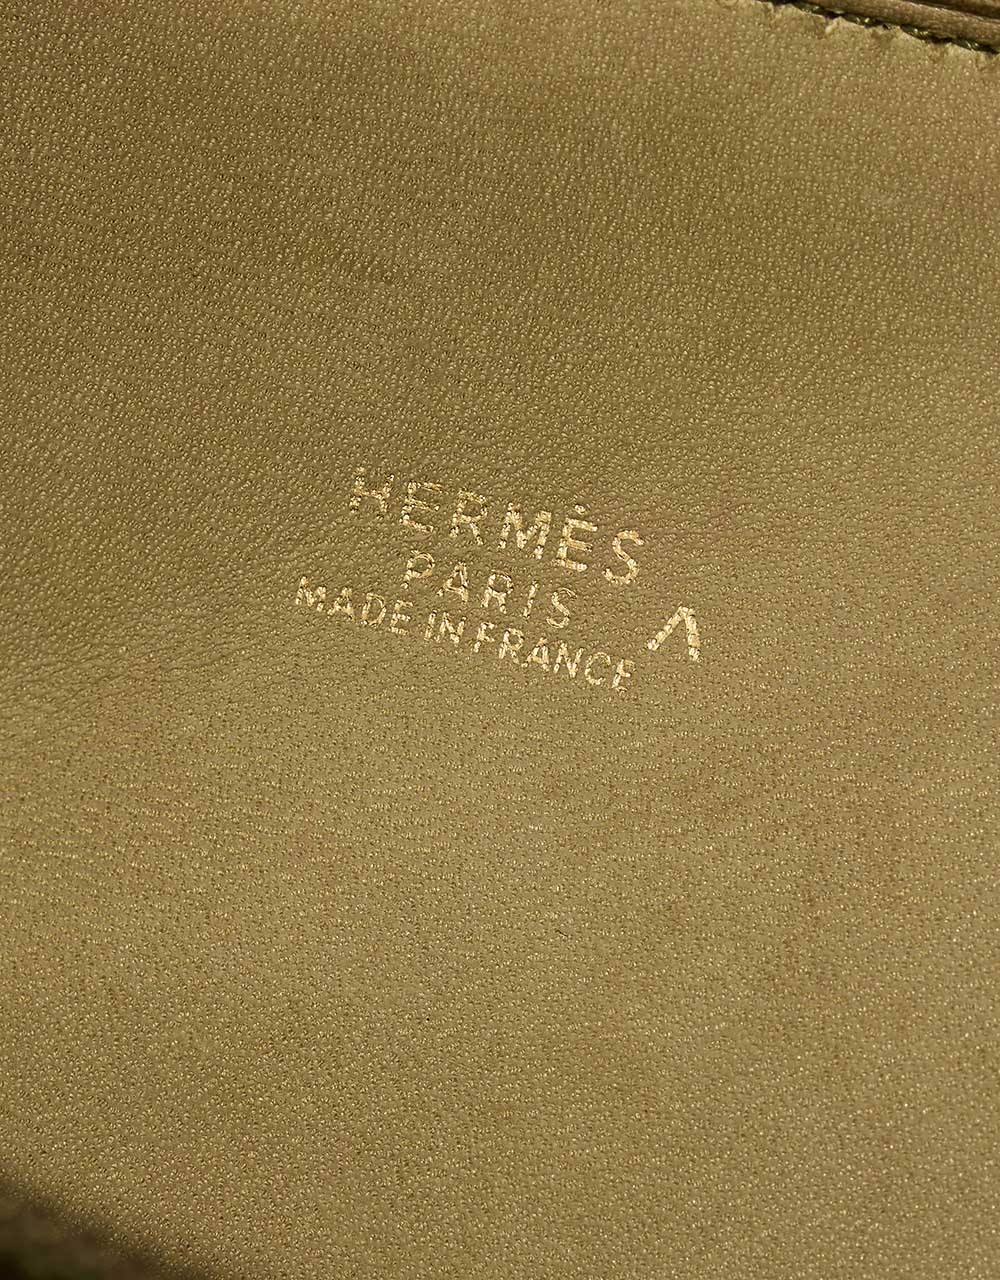 Hermès Bolide 27 VertAnis Logo | Verkaufen Sie Ihre Designertasche auf Saclab.com